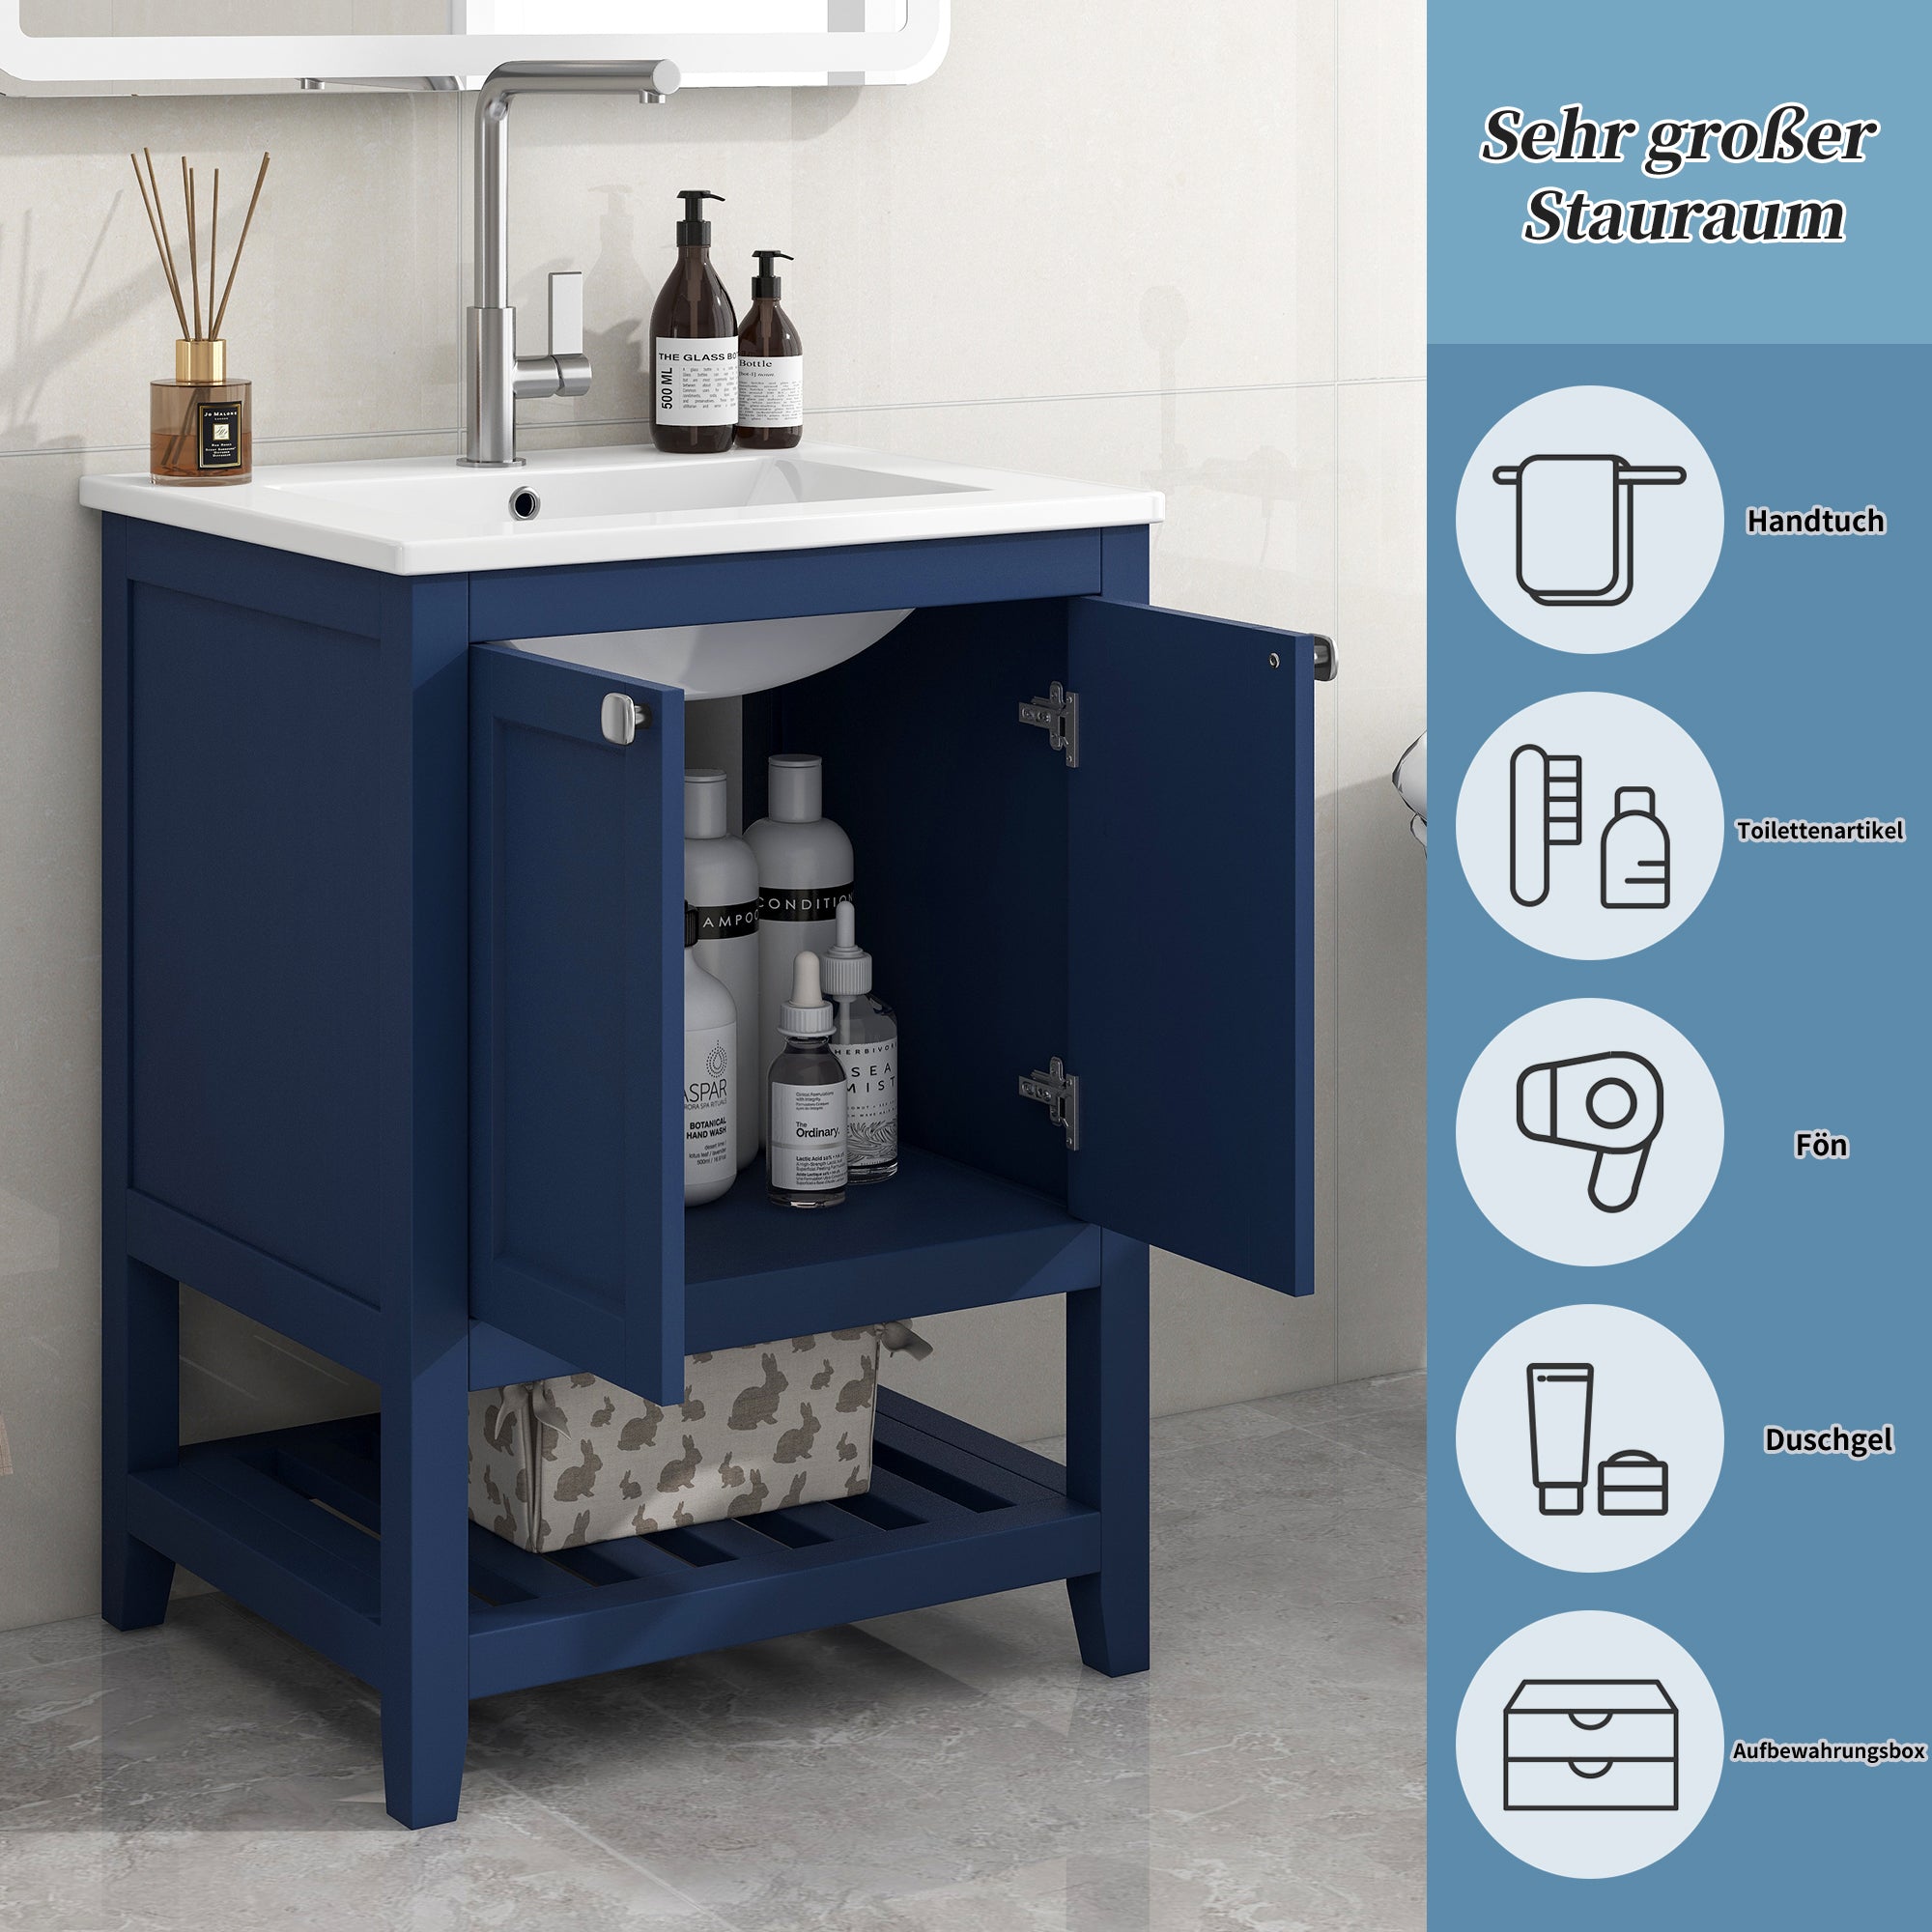 okwish Badezimmerwaschbecken 61*46*90 cm, bodenstehendes Badezimmer-Waschtischmöbel, Einzelwaschbecken mit Unterschrank, mit Keramikwaschbecken, Blau